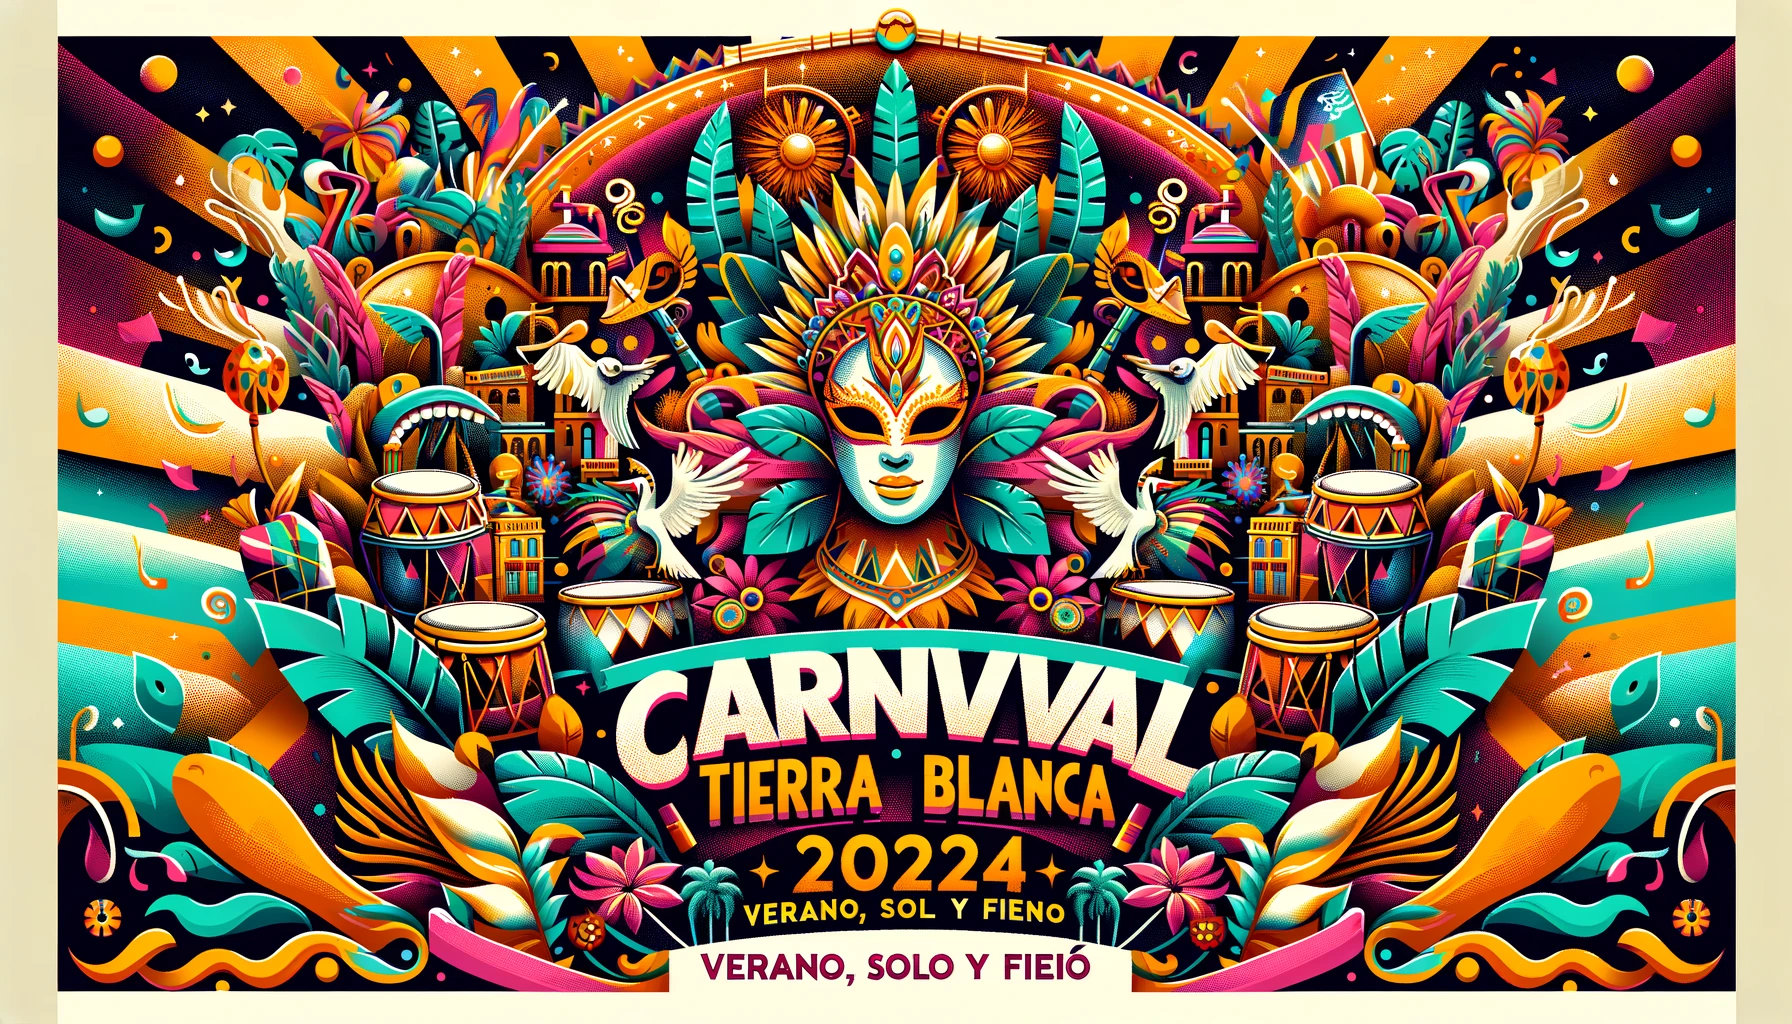 Del 20 al 23 de junio se celebra el Carnaval Tierra Blanca 2024: ¡Verano, Sol y Fiesta!